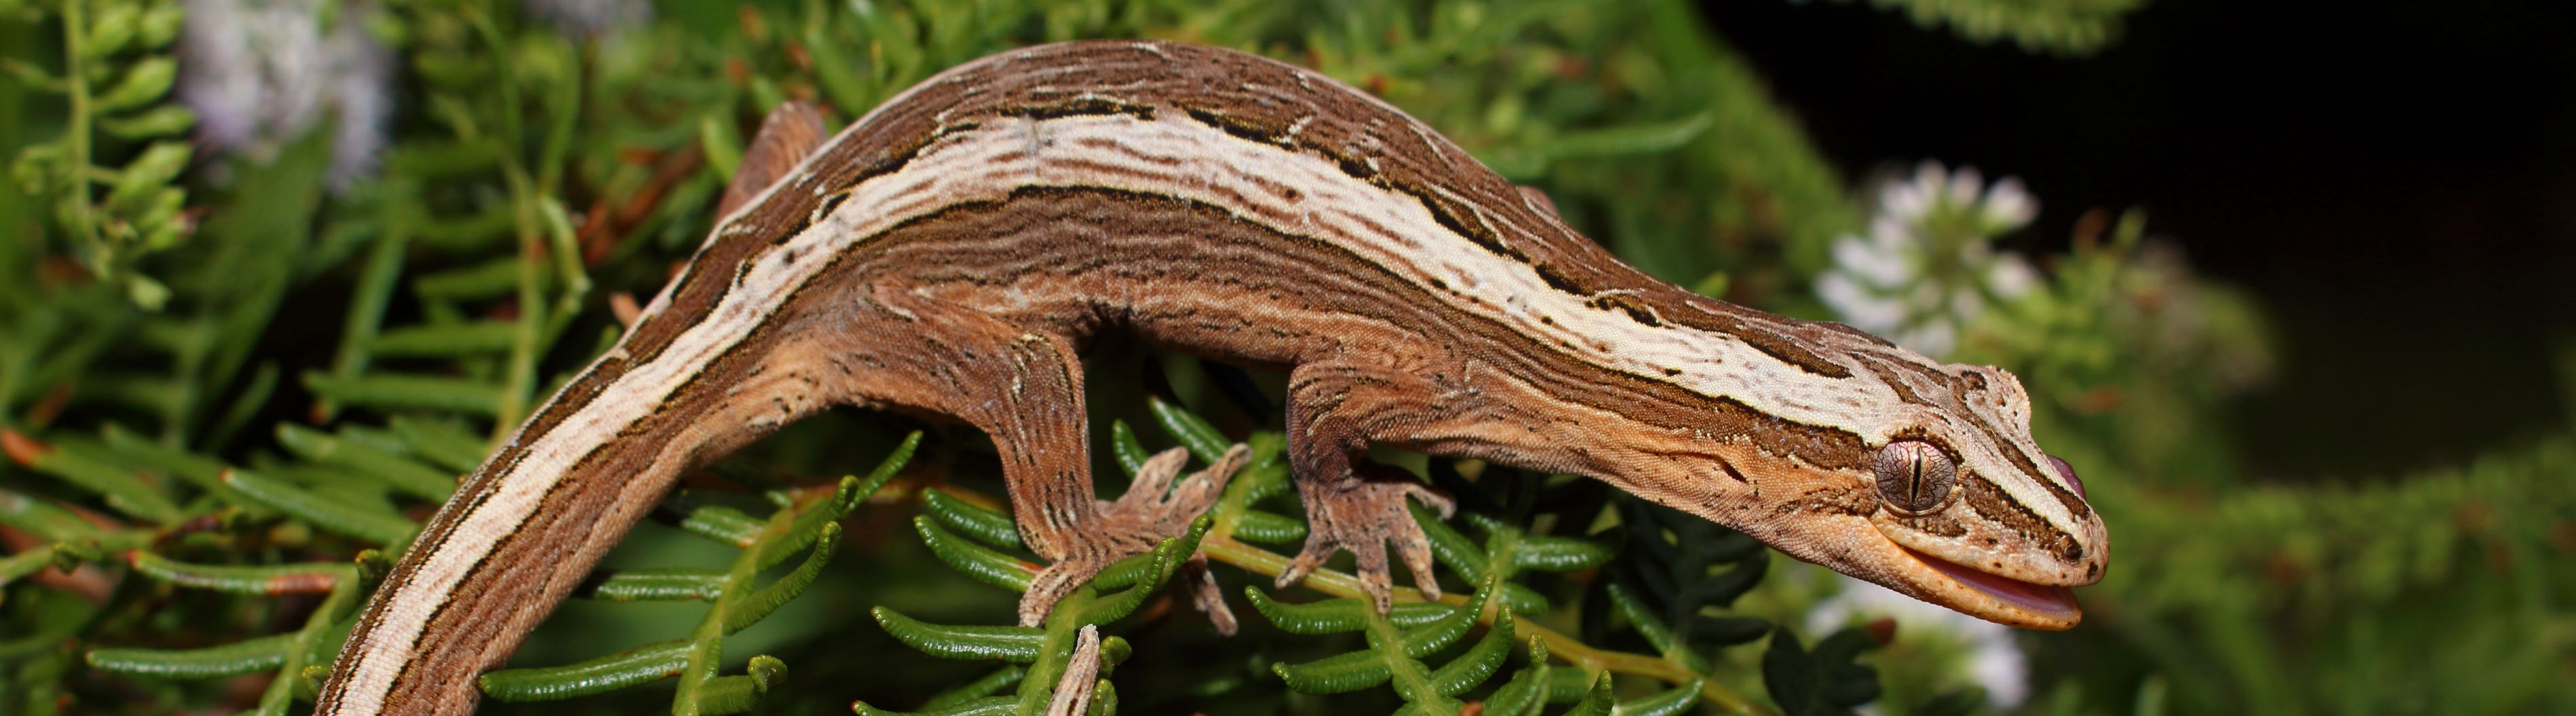 Southern striped gecko <a href="https://www.instagram.com/nickharker.nz/">© Nick Harker</a>